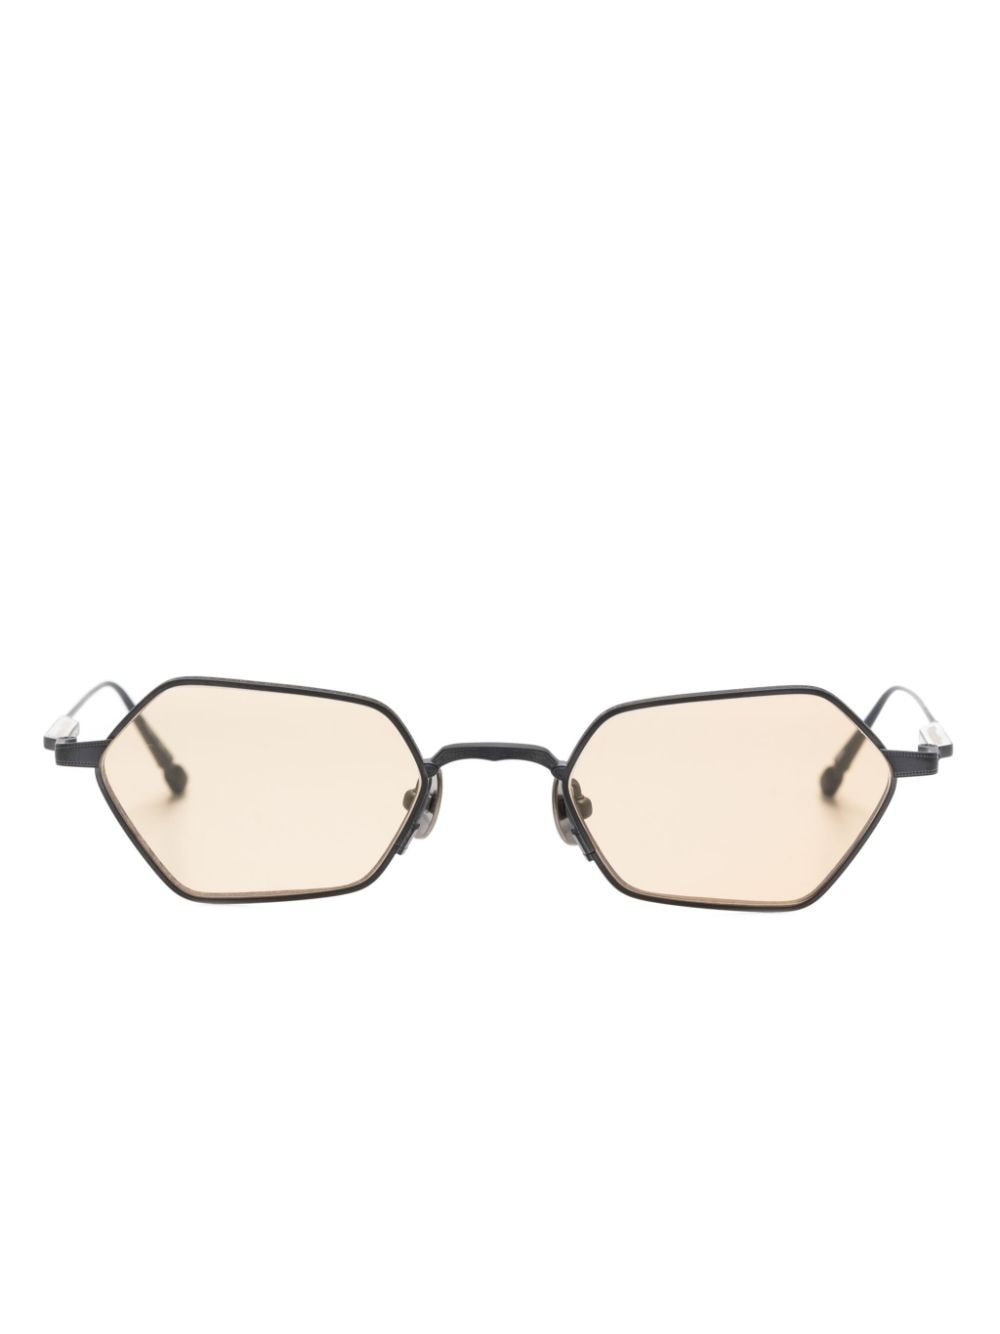 geometric-frame optical glasses - 1